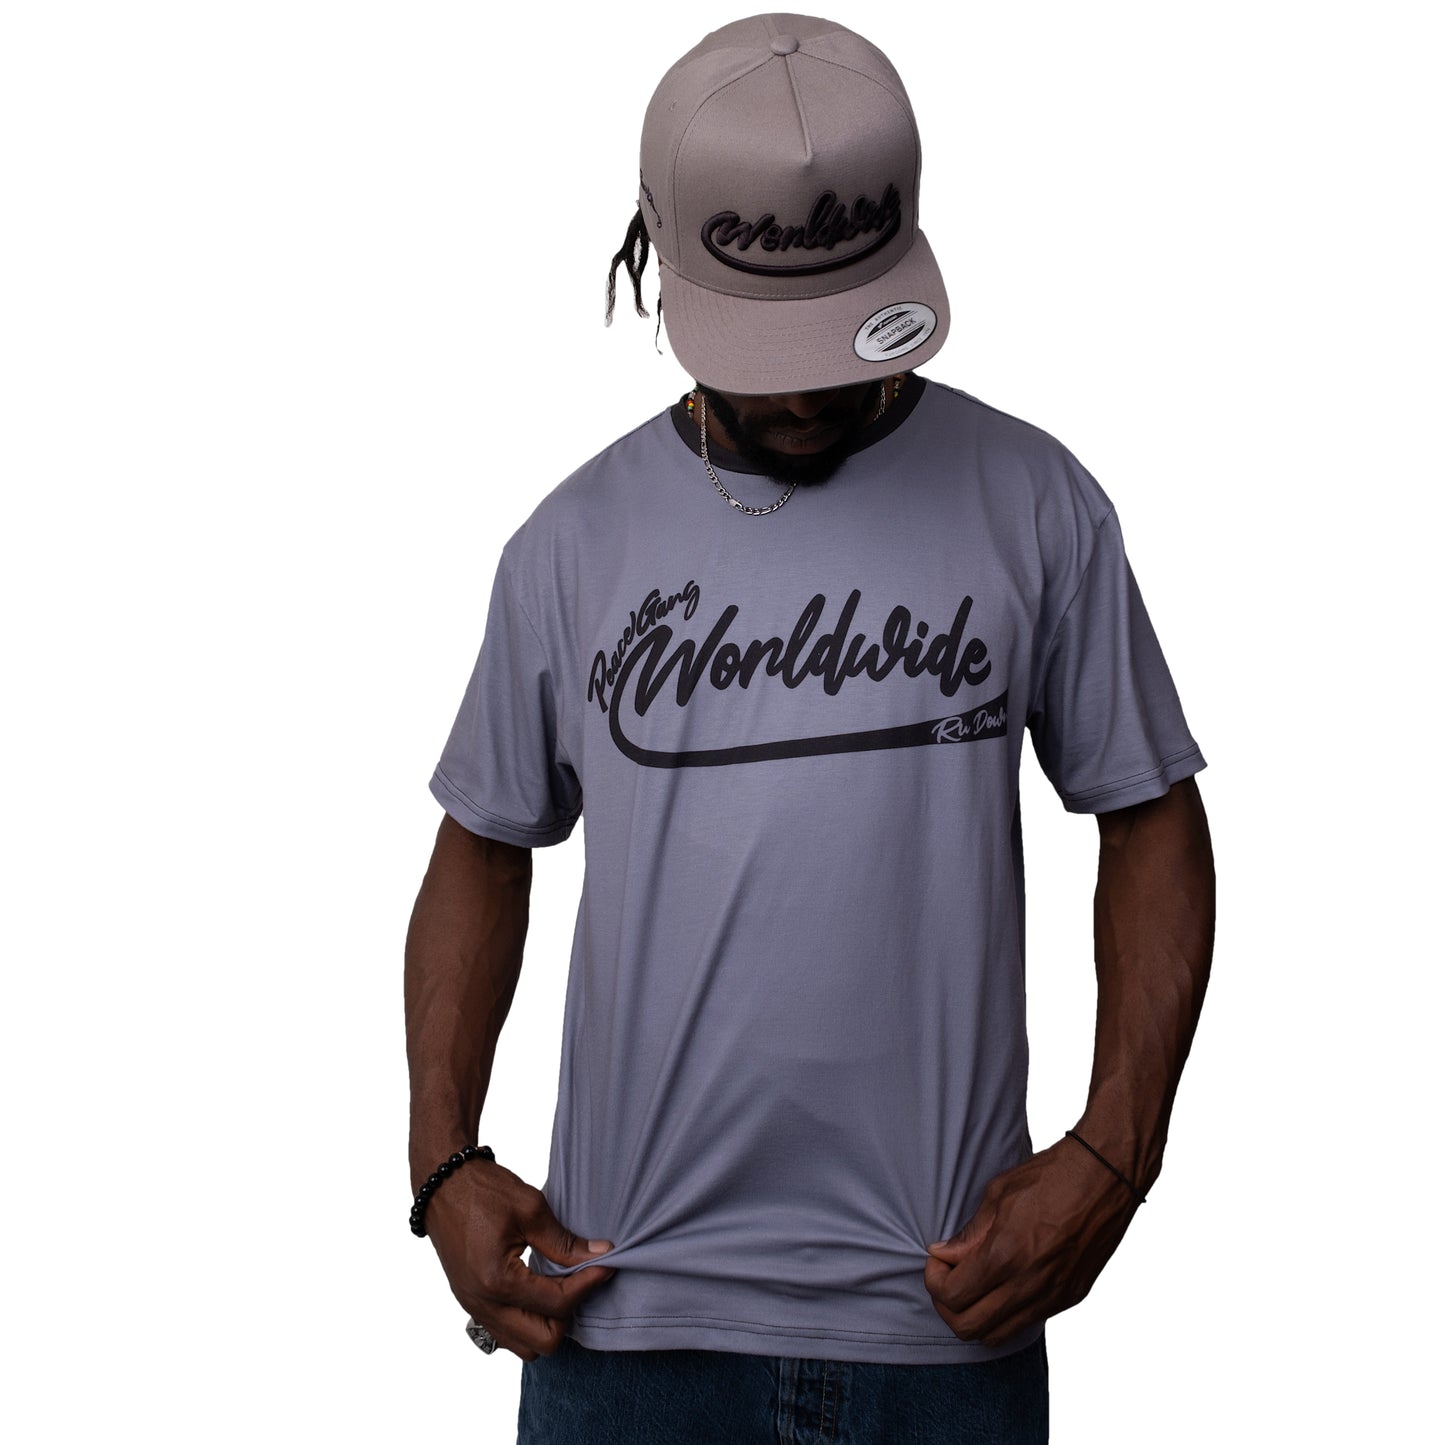 Unisex T-Shirt "Worldwide" PEACE GANG